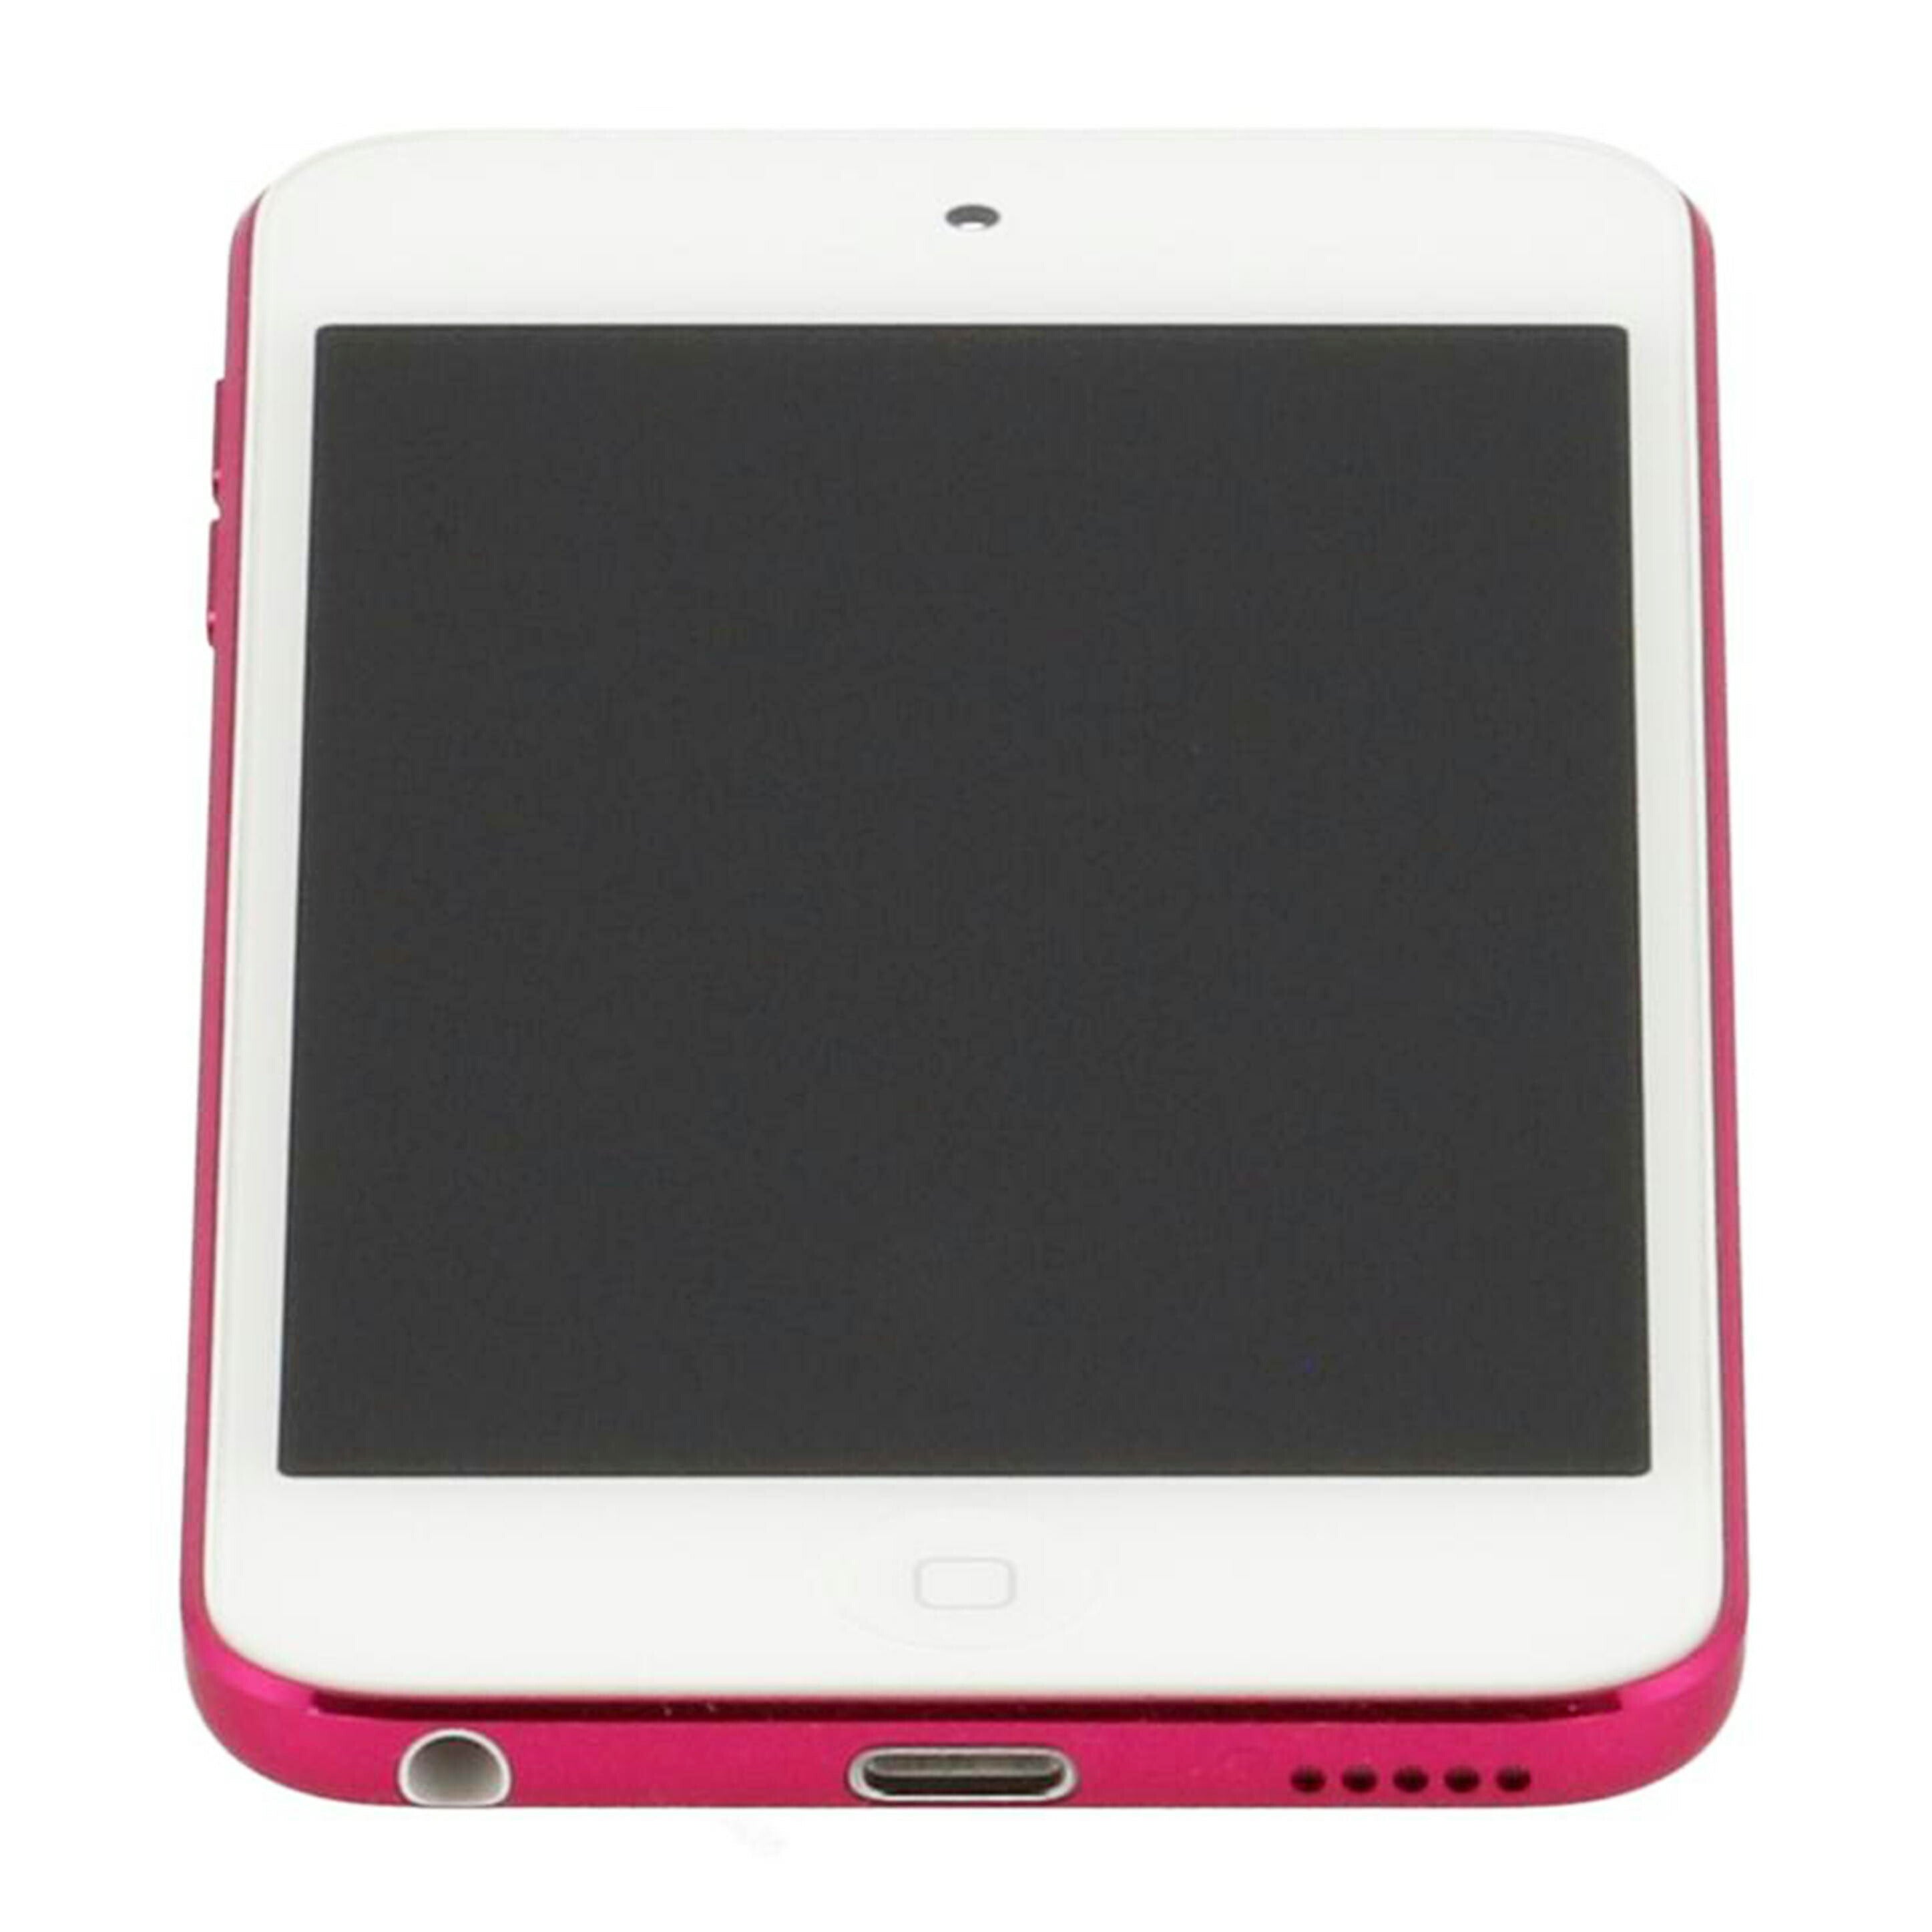 お買い得定番新品未開封 iPod touch MVHY2J/A 128GB ピンク アイポッドタッチ 第7世代 iPod本体